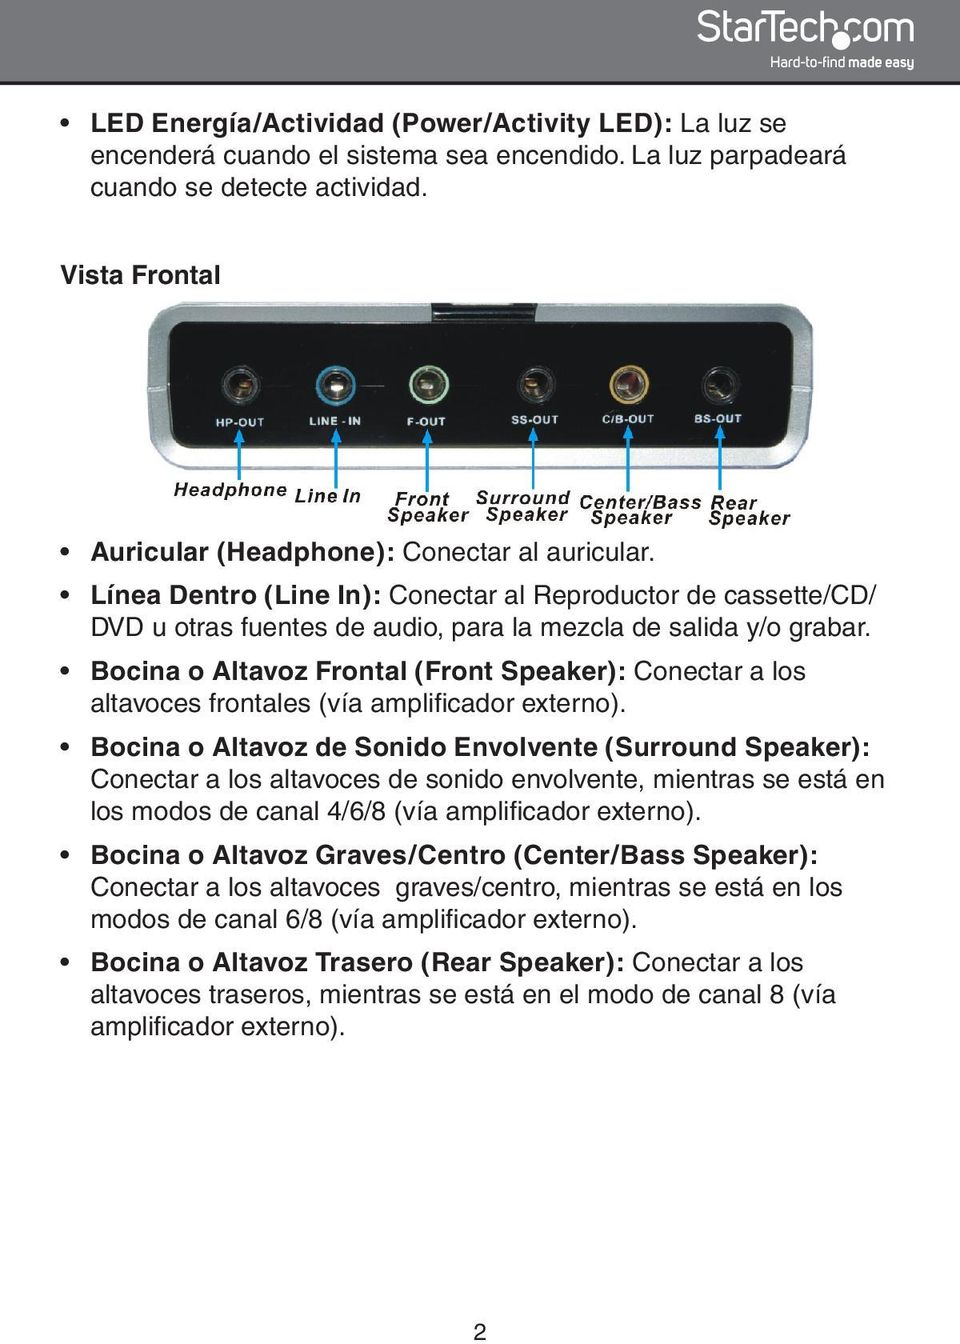 Bocina o Altavoz Frontal (Front Speaker): Conectar a los altavoces frontales (vía amplificador externo).